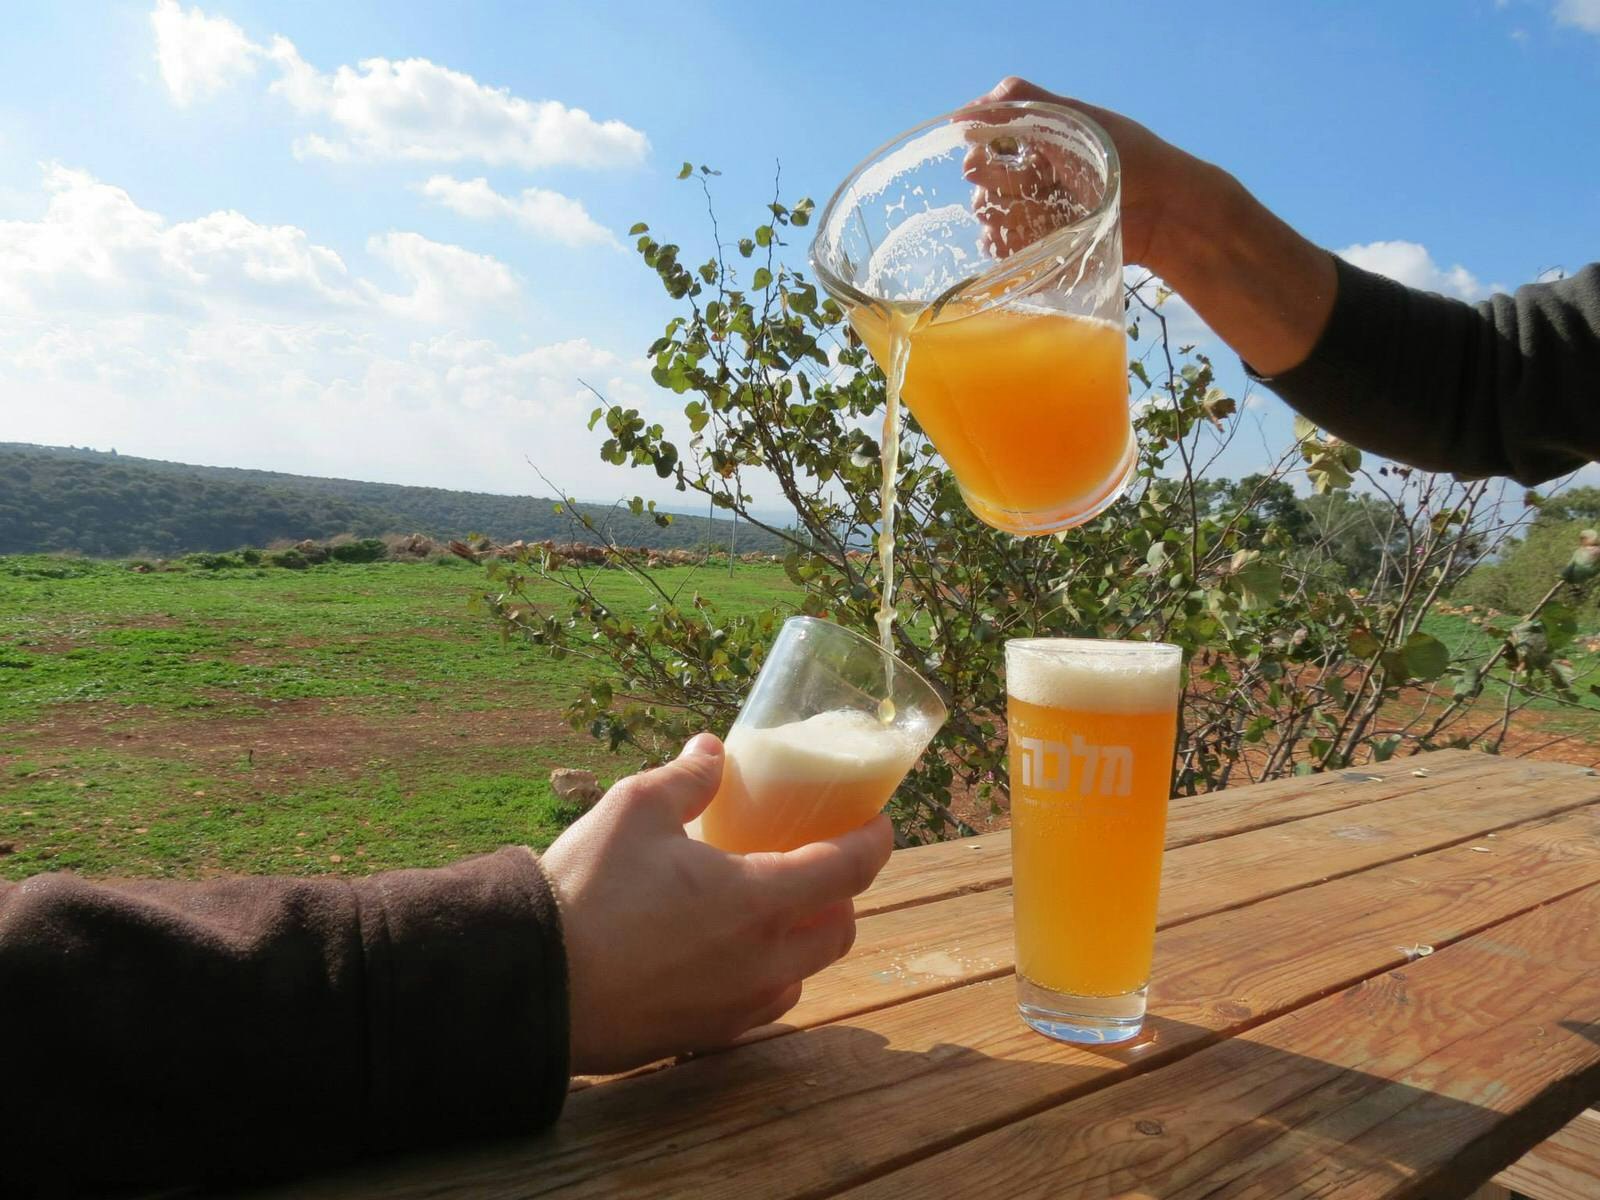 Malka beer, Israel. Image by Malka